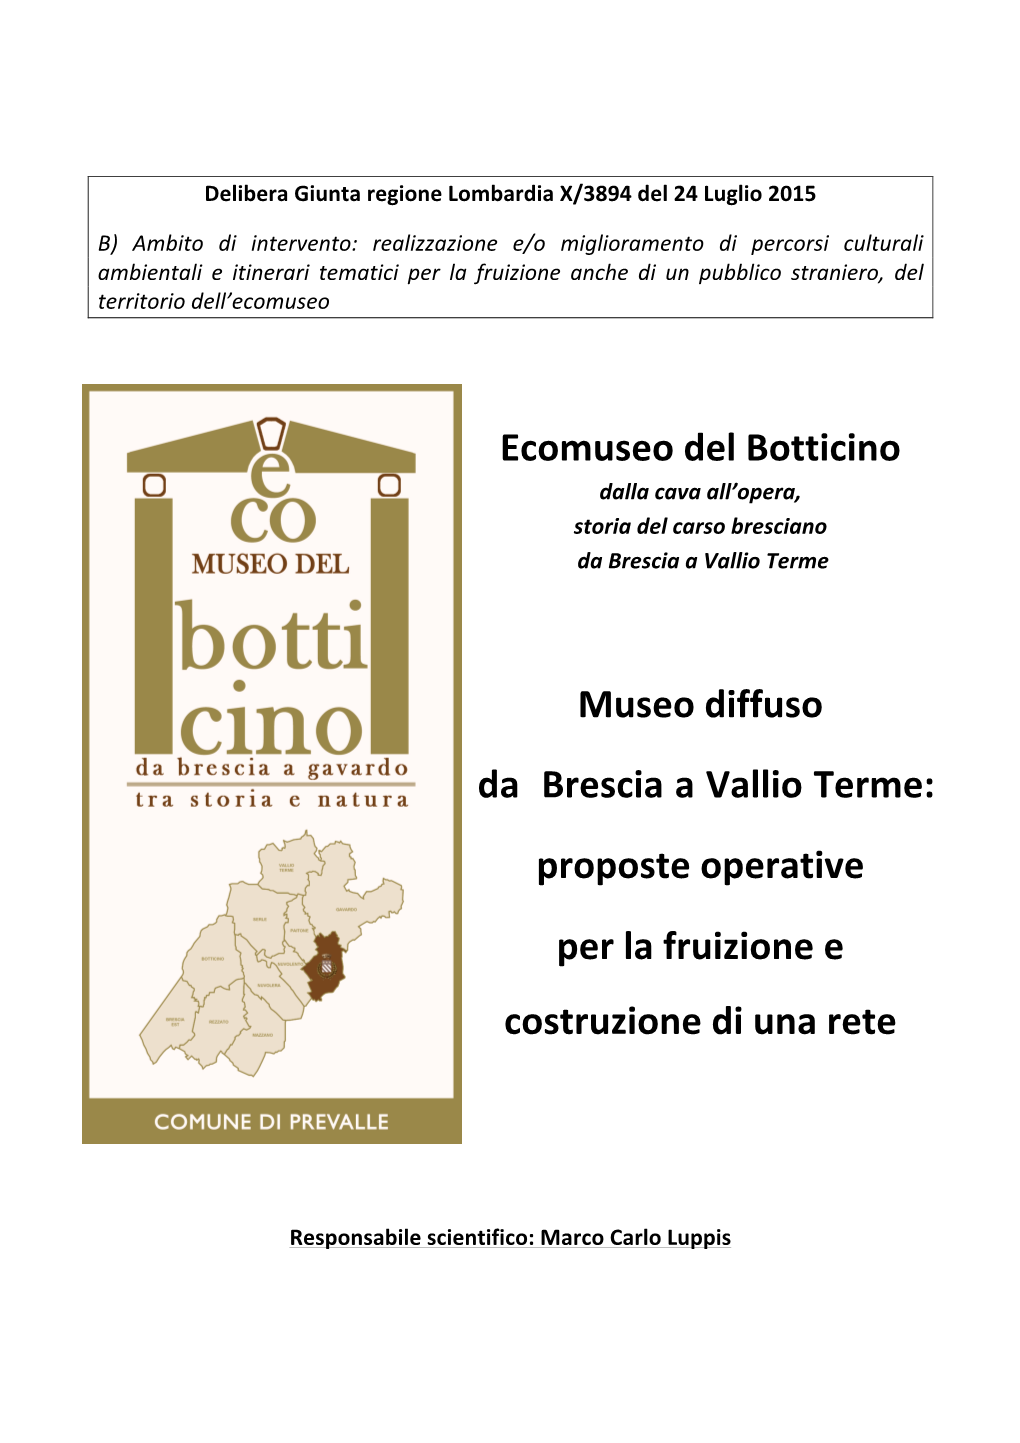 Ecomuseo Del Botticino Museo Diffuso Da Brescia a Vallio Terme